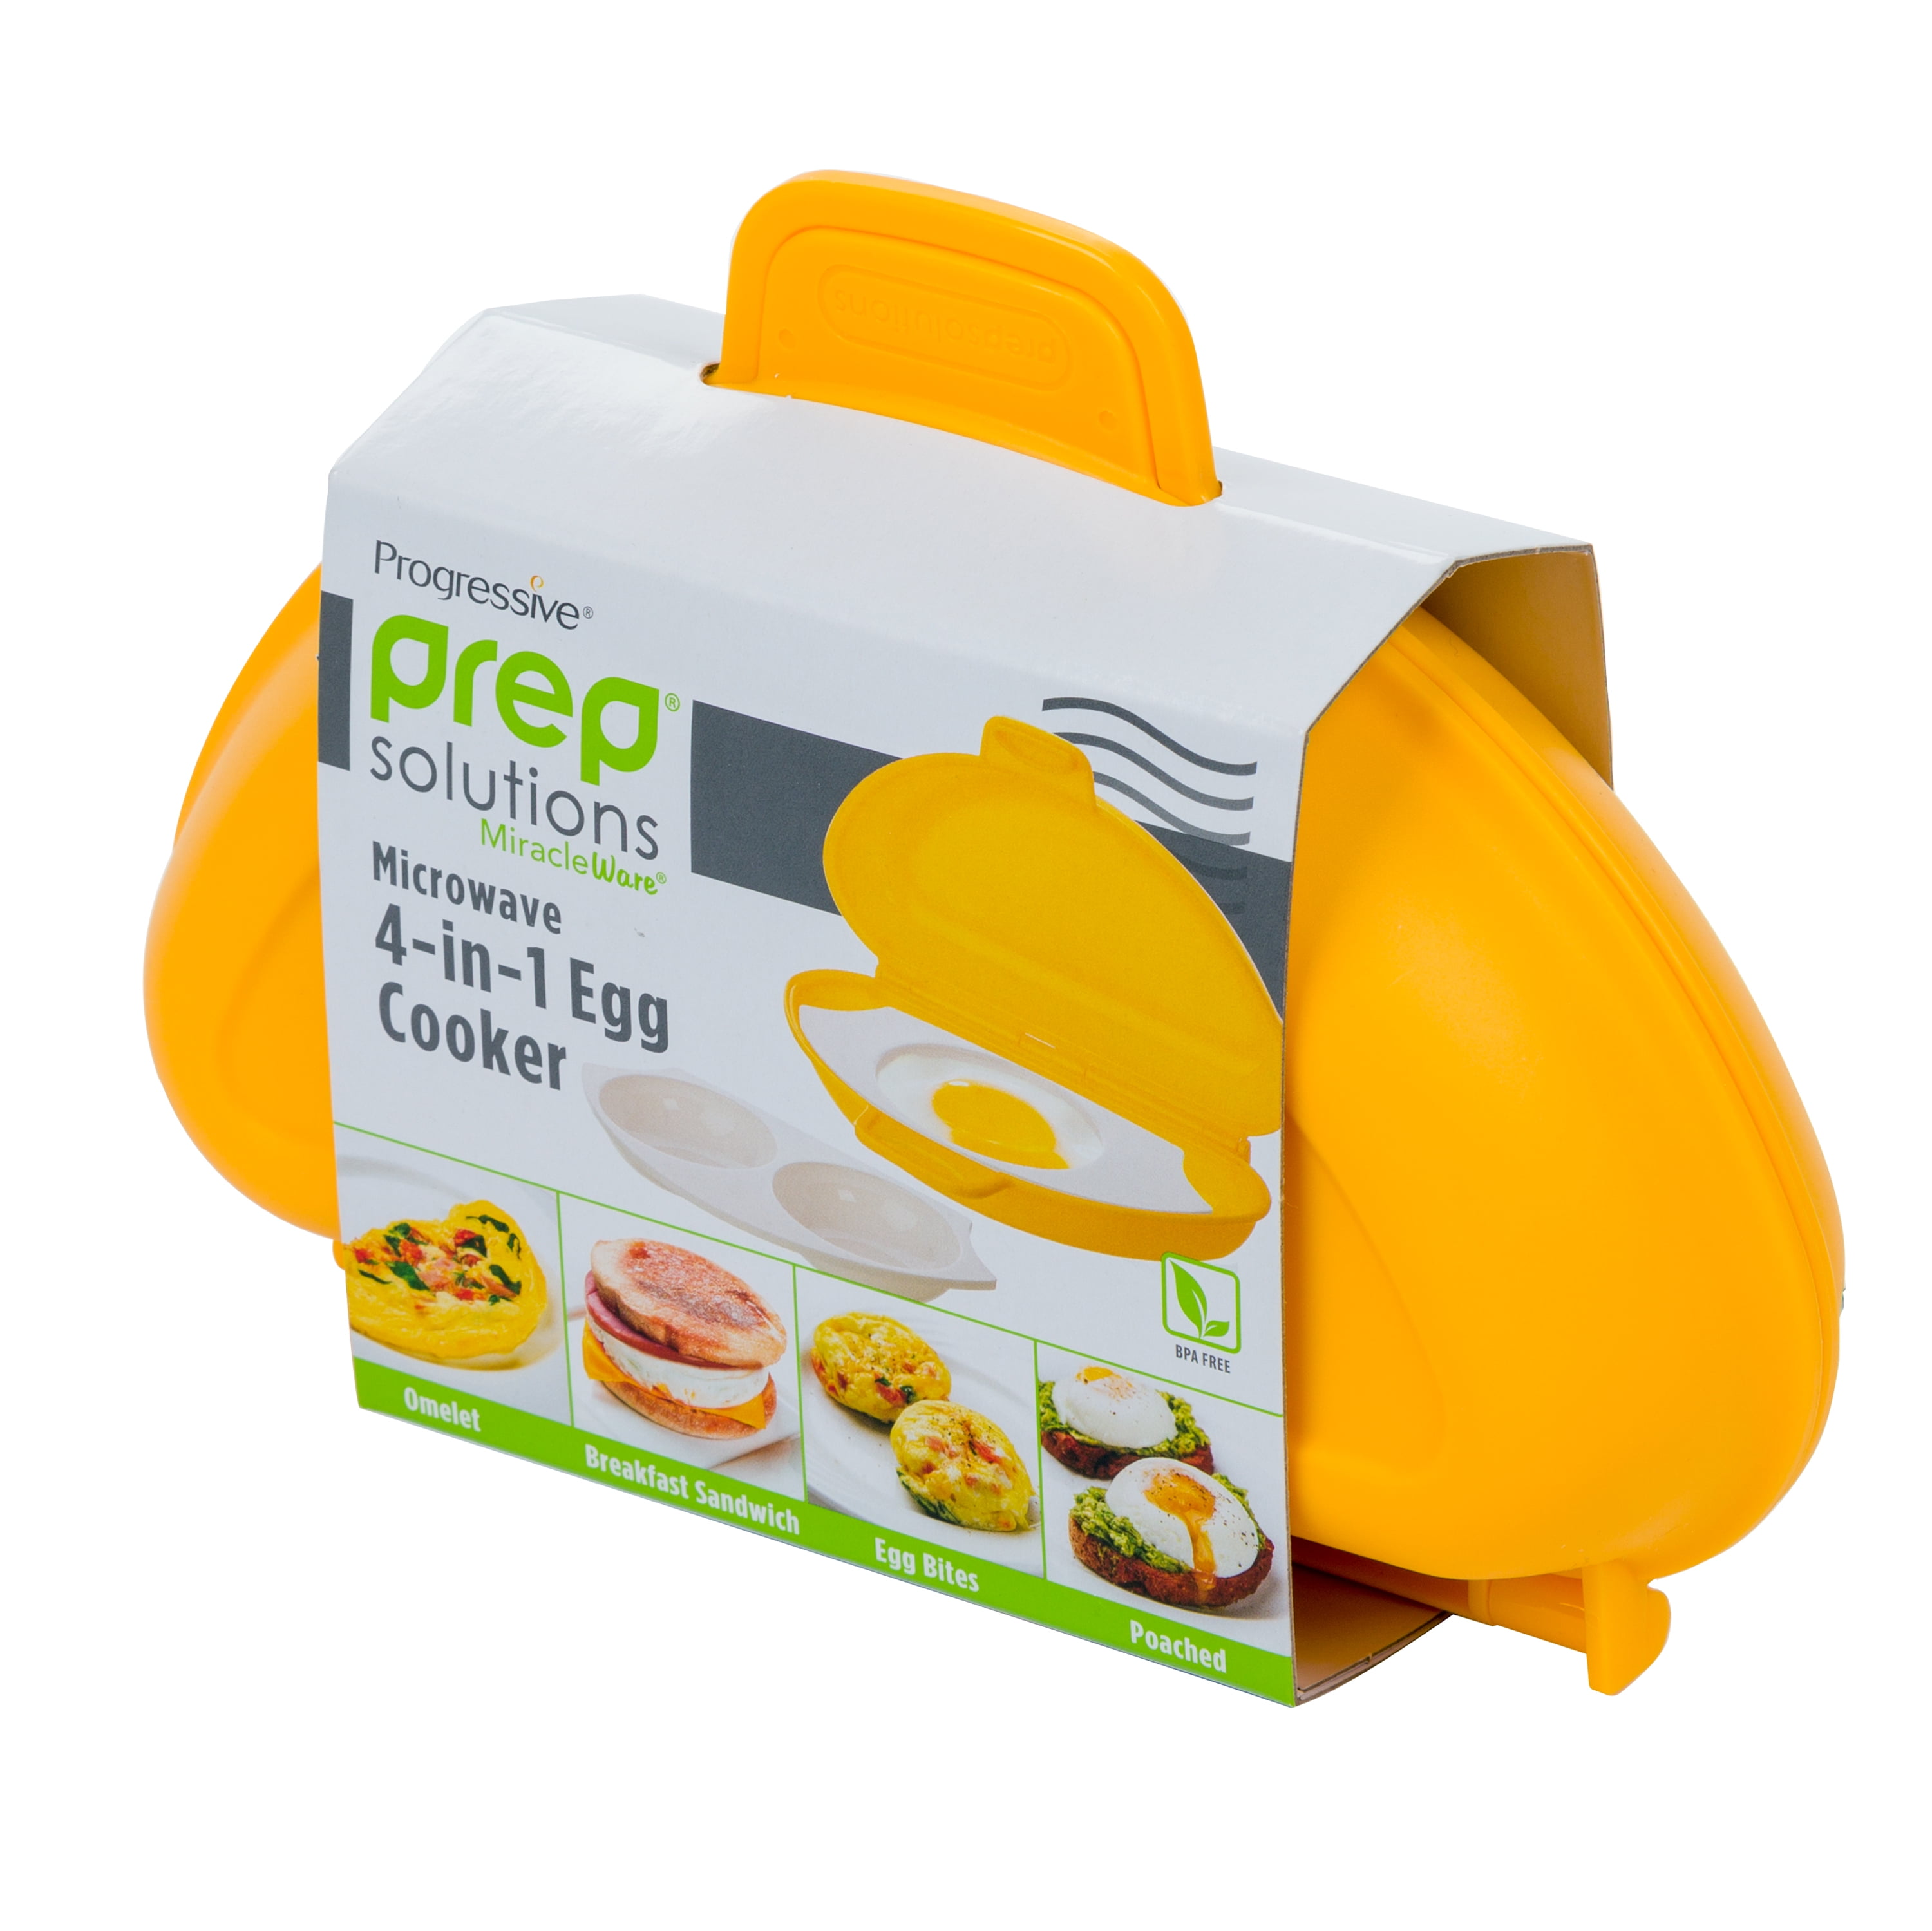 Microwave Egg Cooker - Inspire Uplift